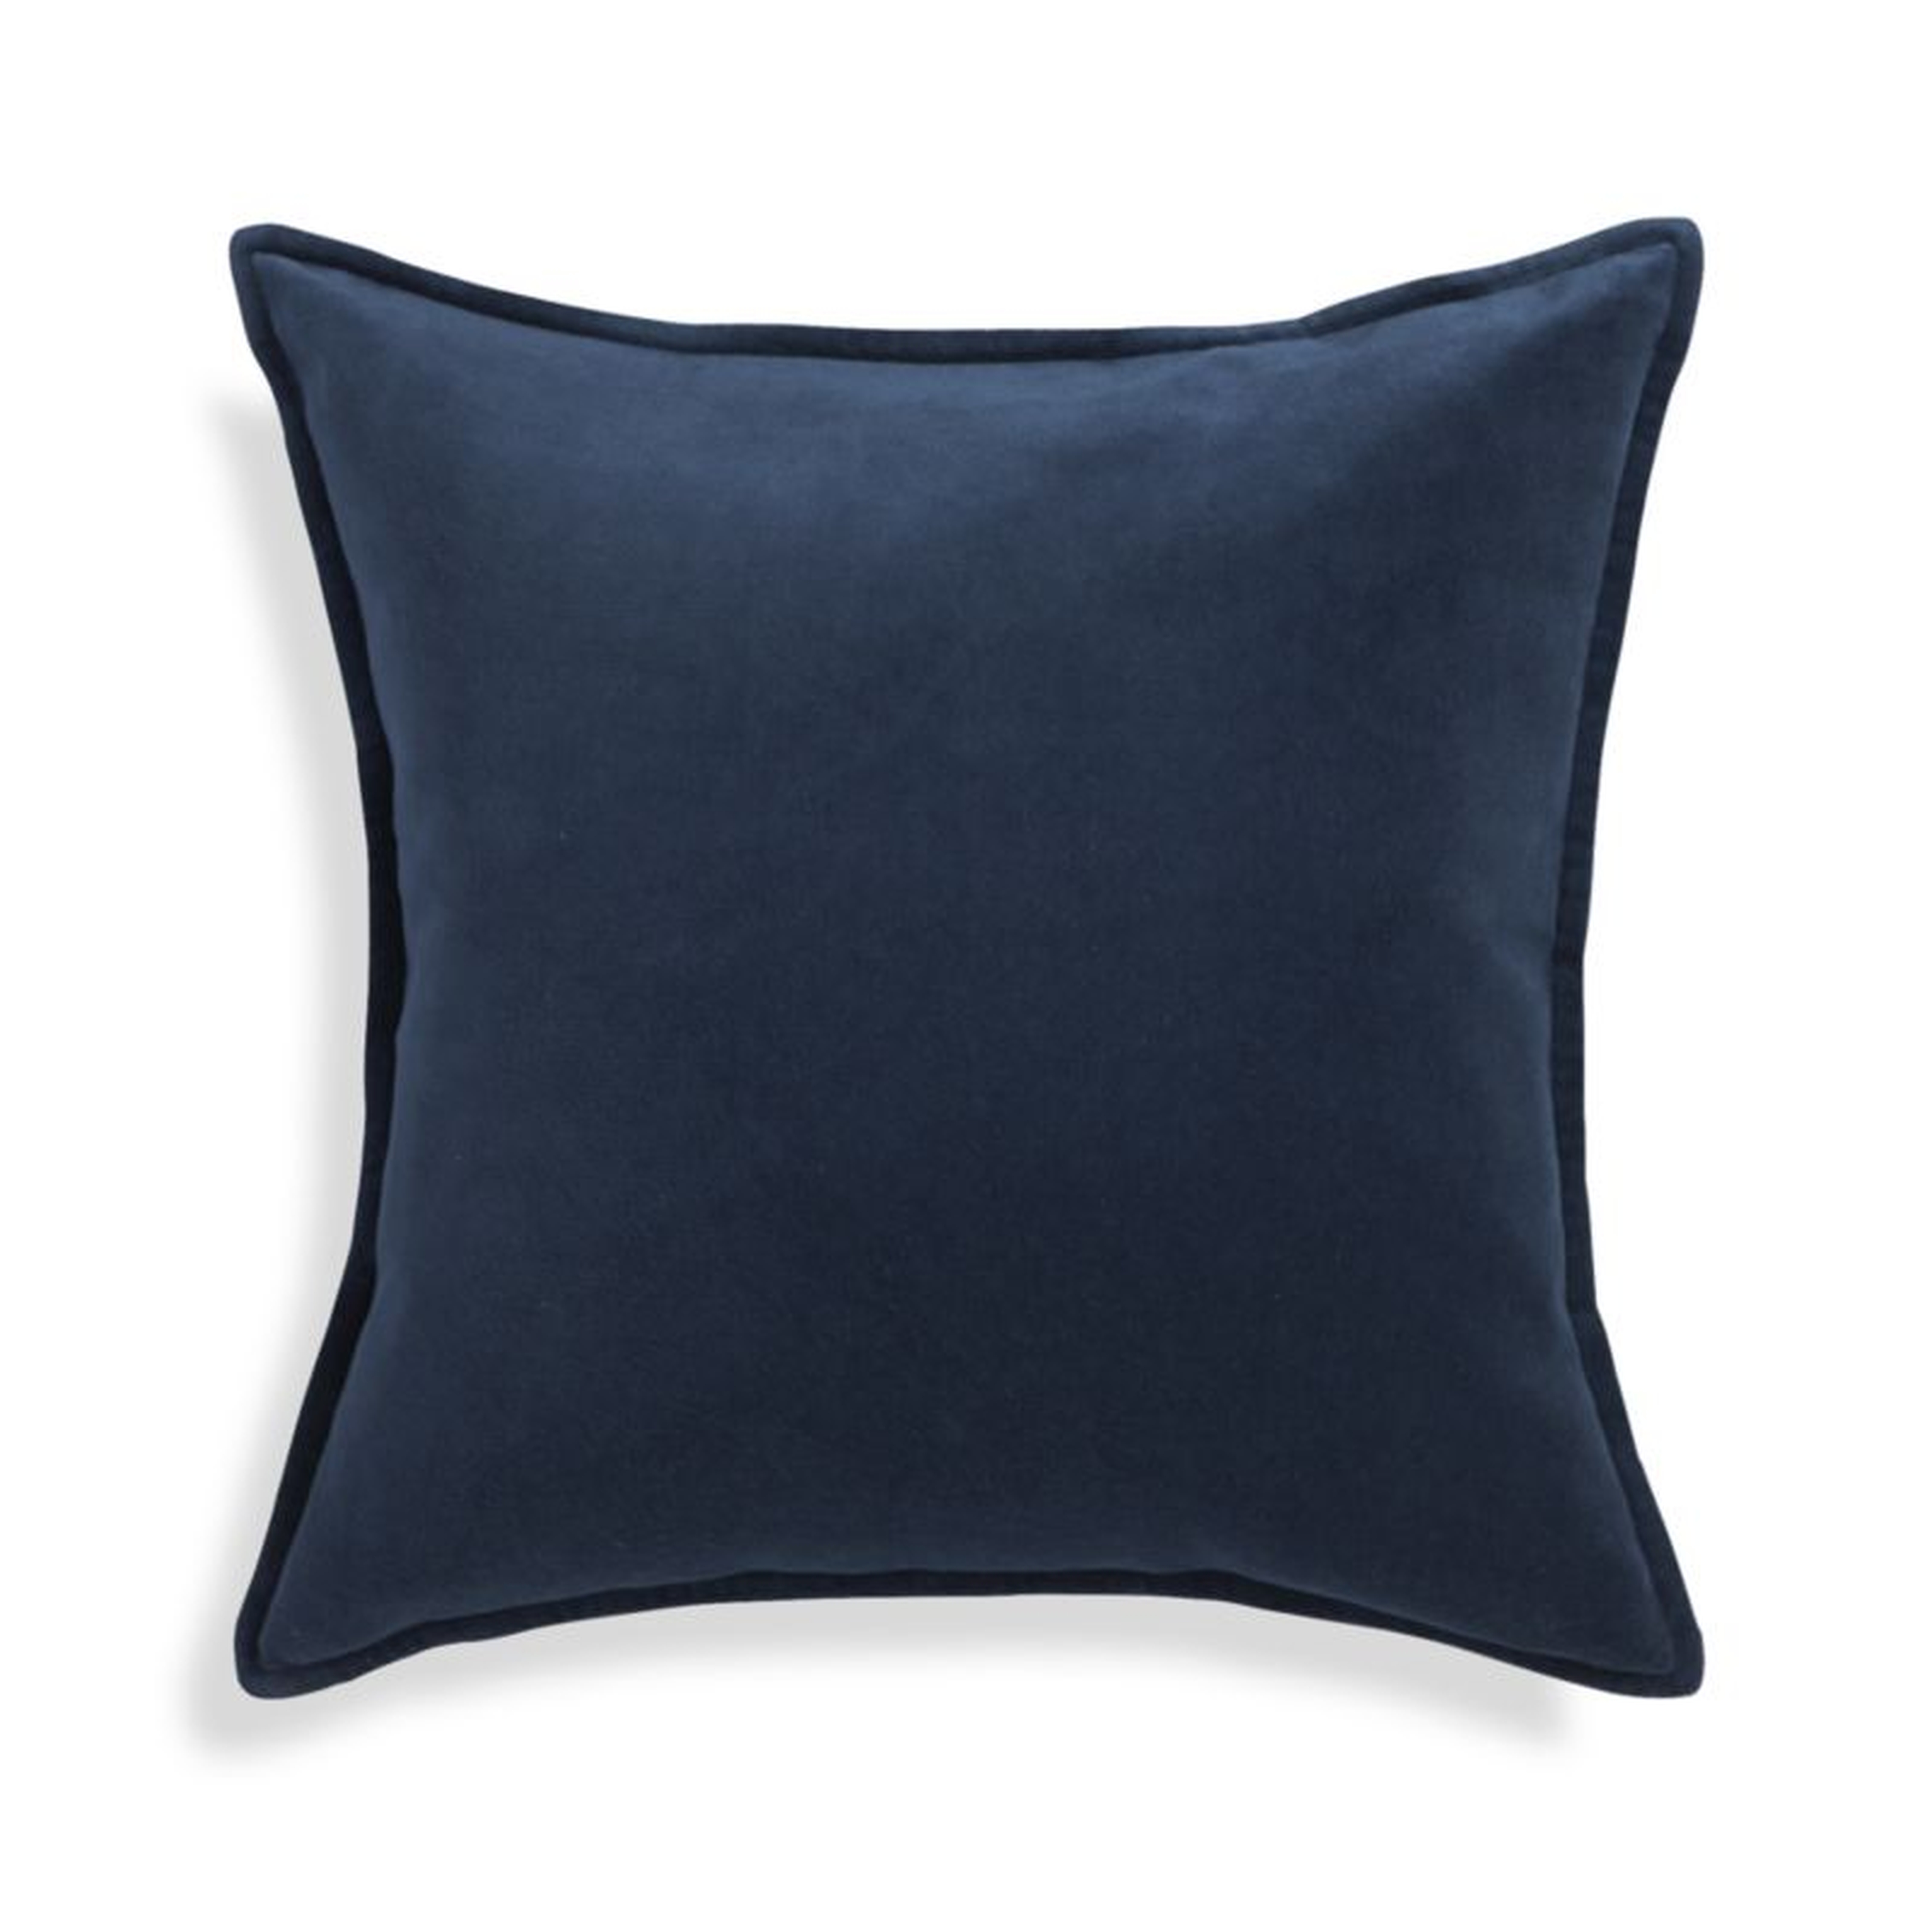 Brenner Indigo Blue 20" Velvet Pillow with Down-Alternative Insert. - Crate and Barrel